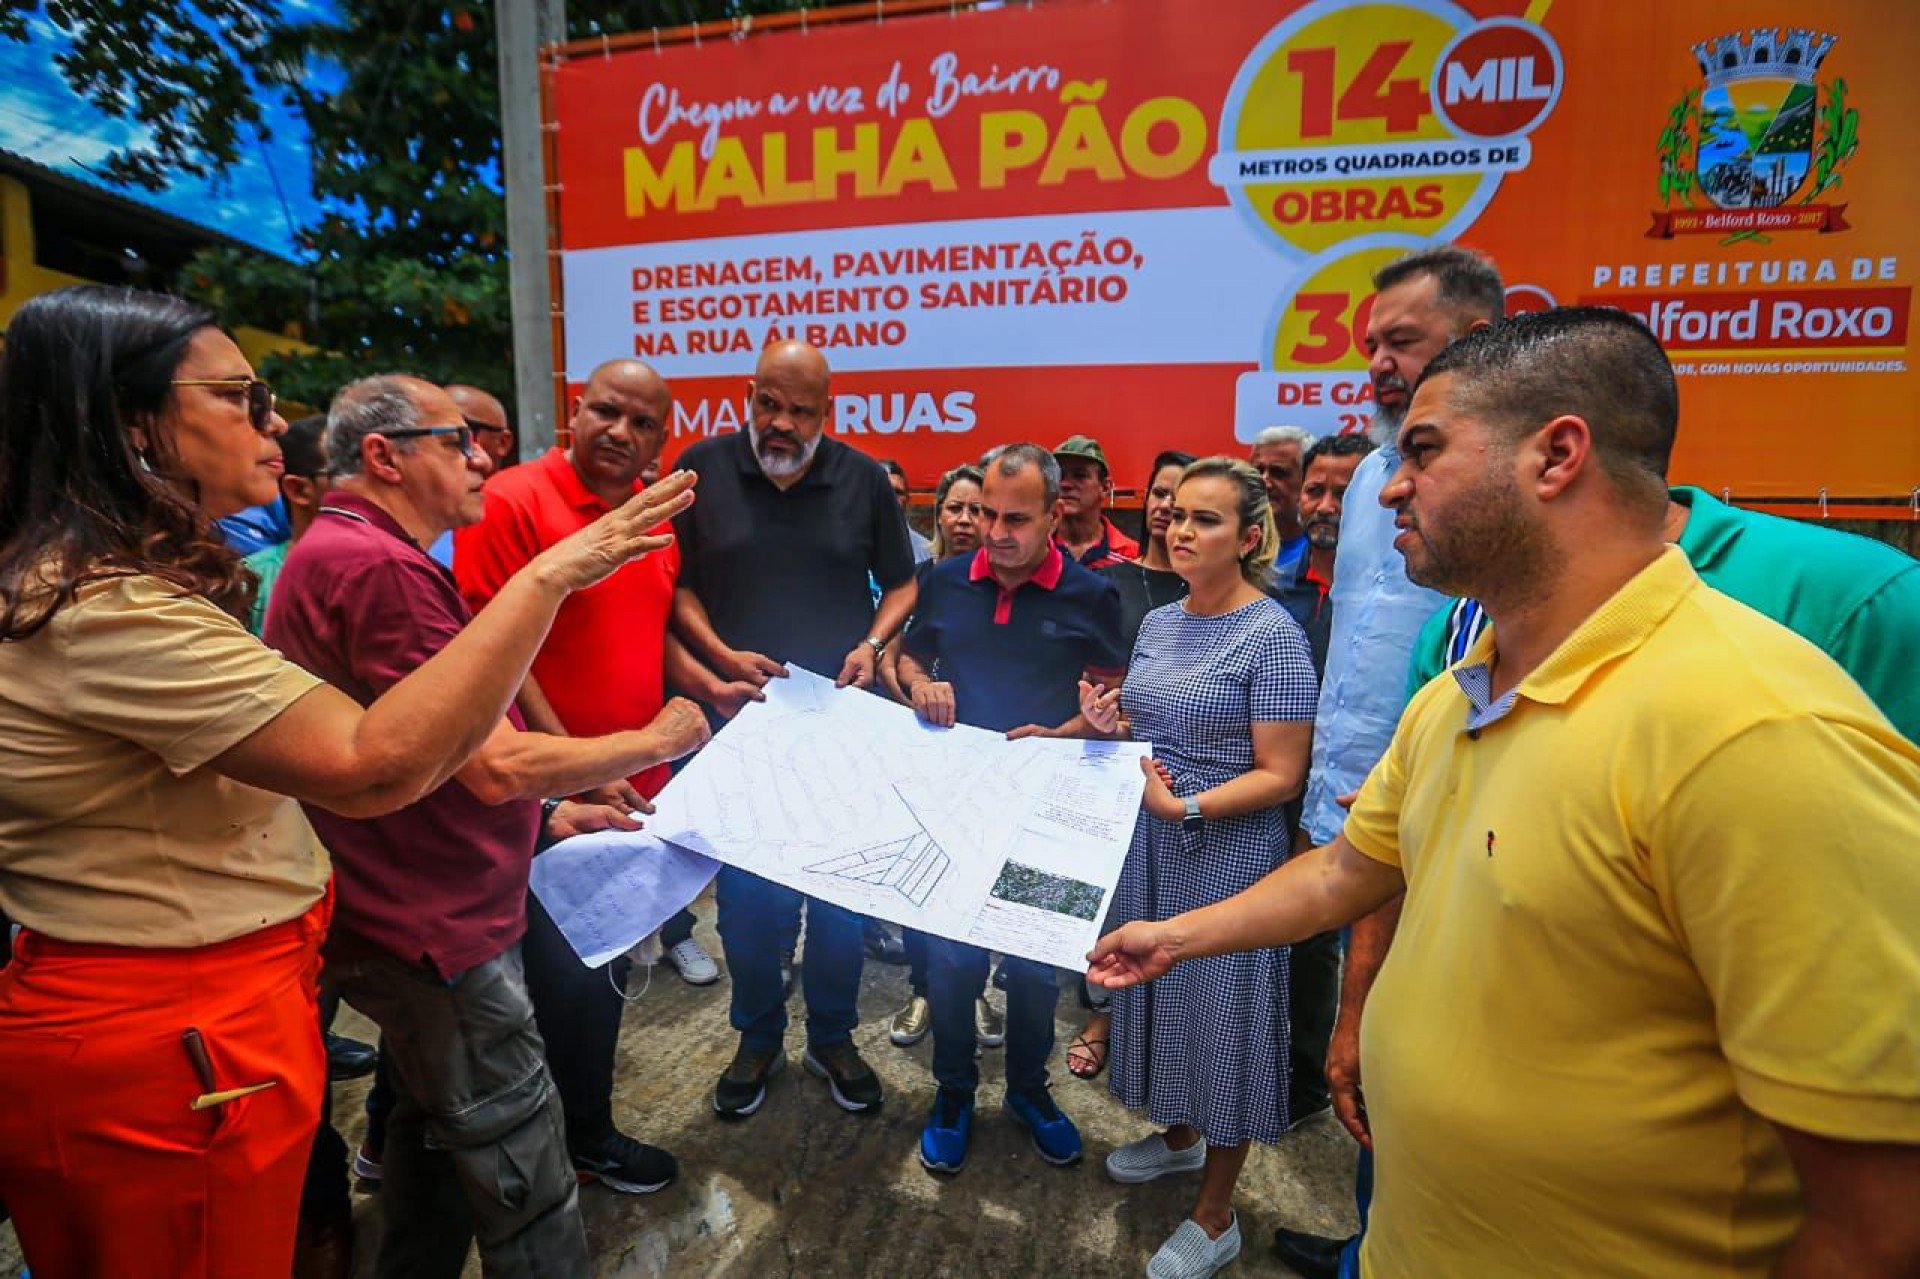 O Malhapão ganhará 14 mil metros quadrados de obras de esgotamento sanitário, drenagem e pavimentação - Rafael Barreto / PMBR